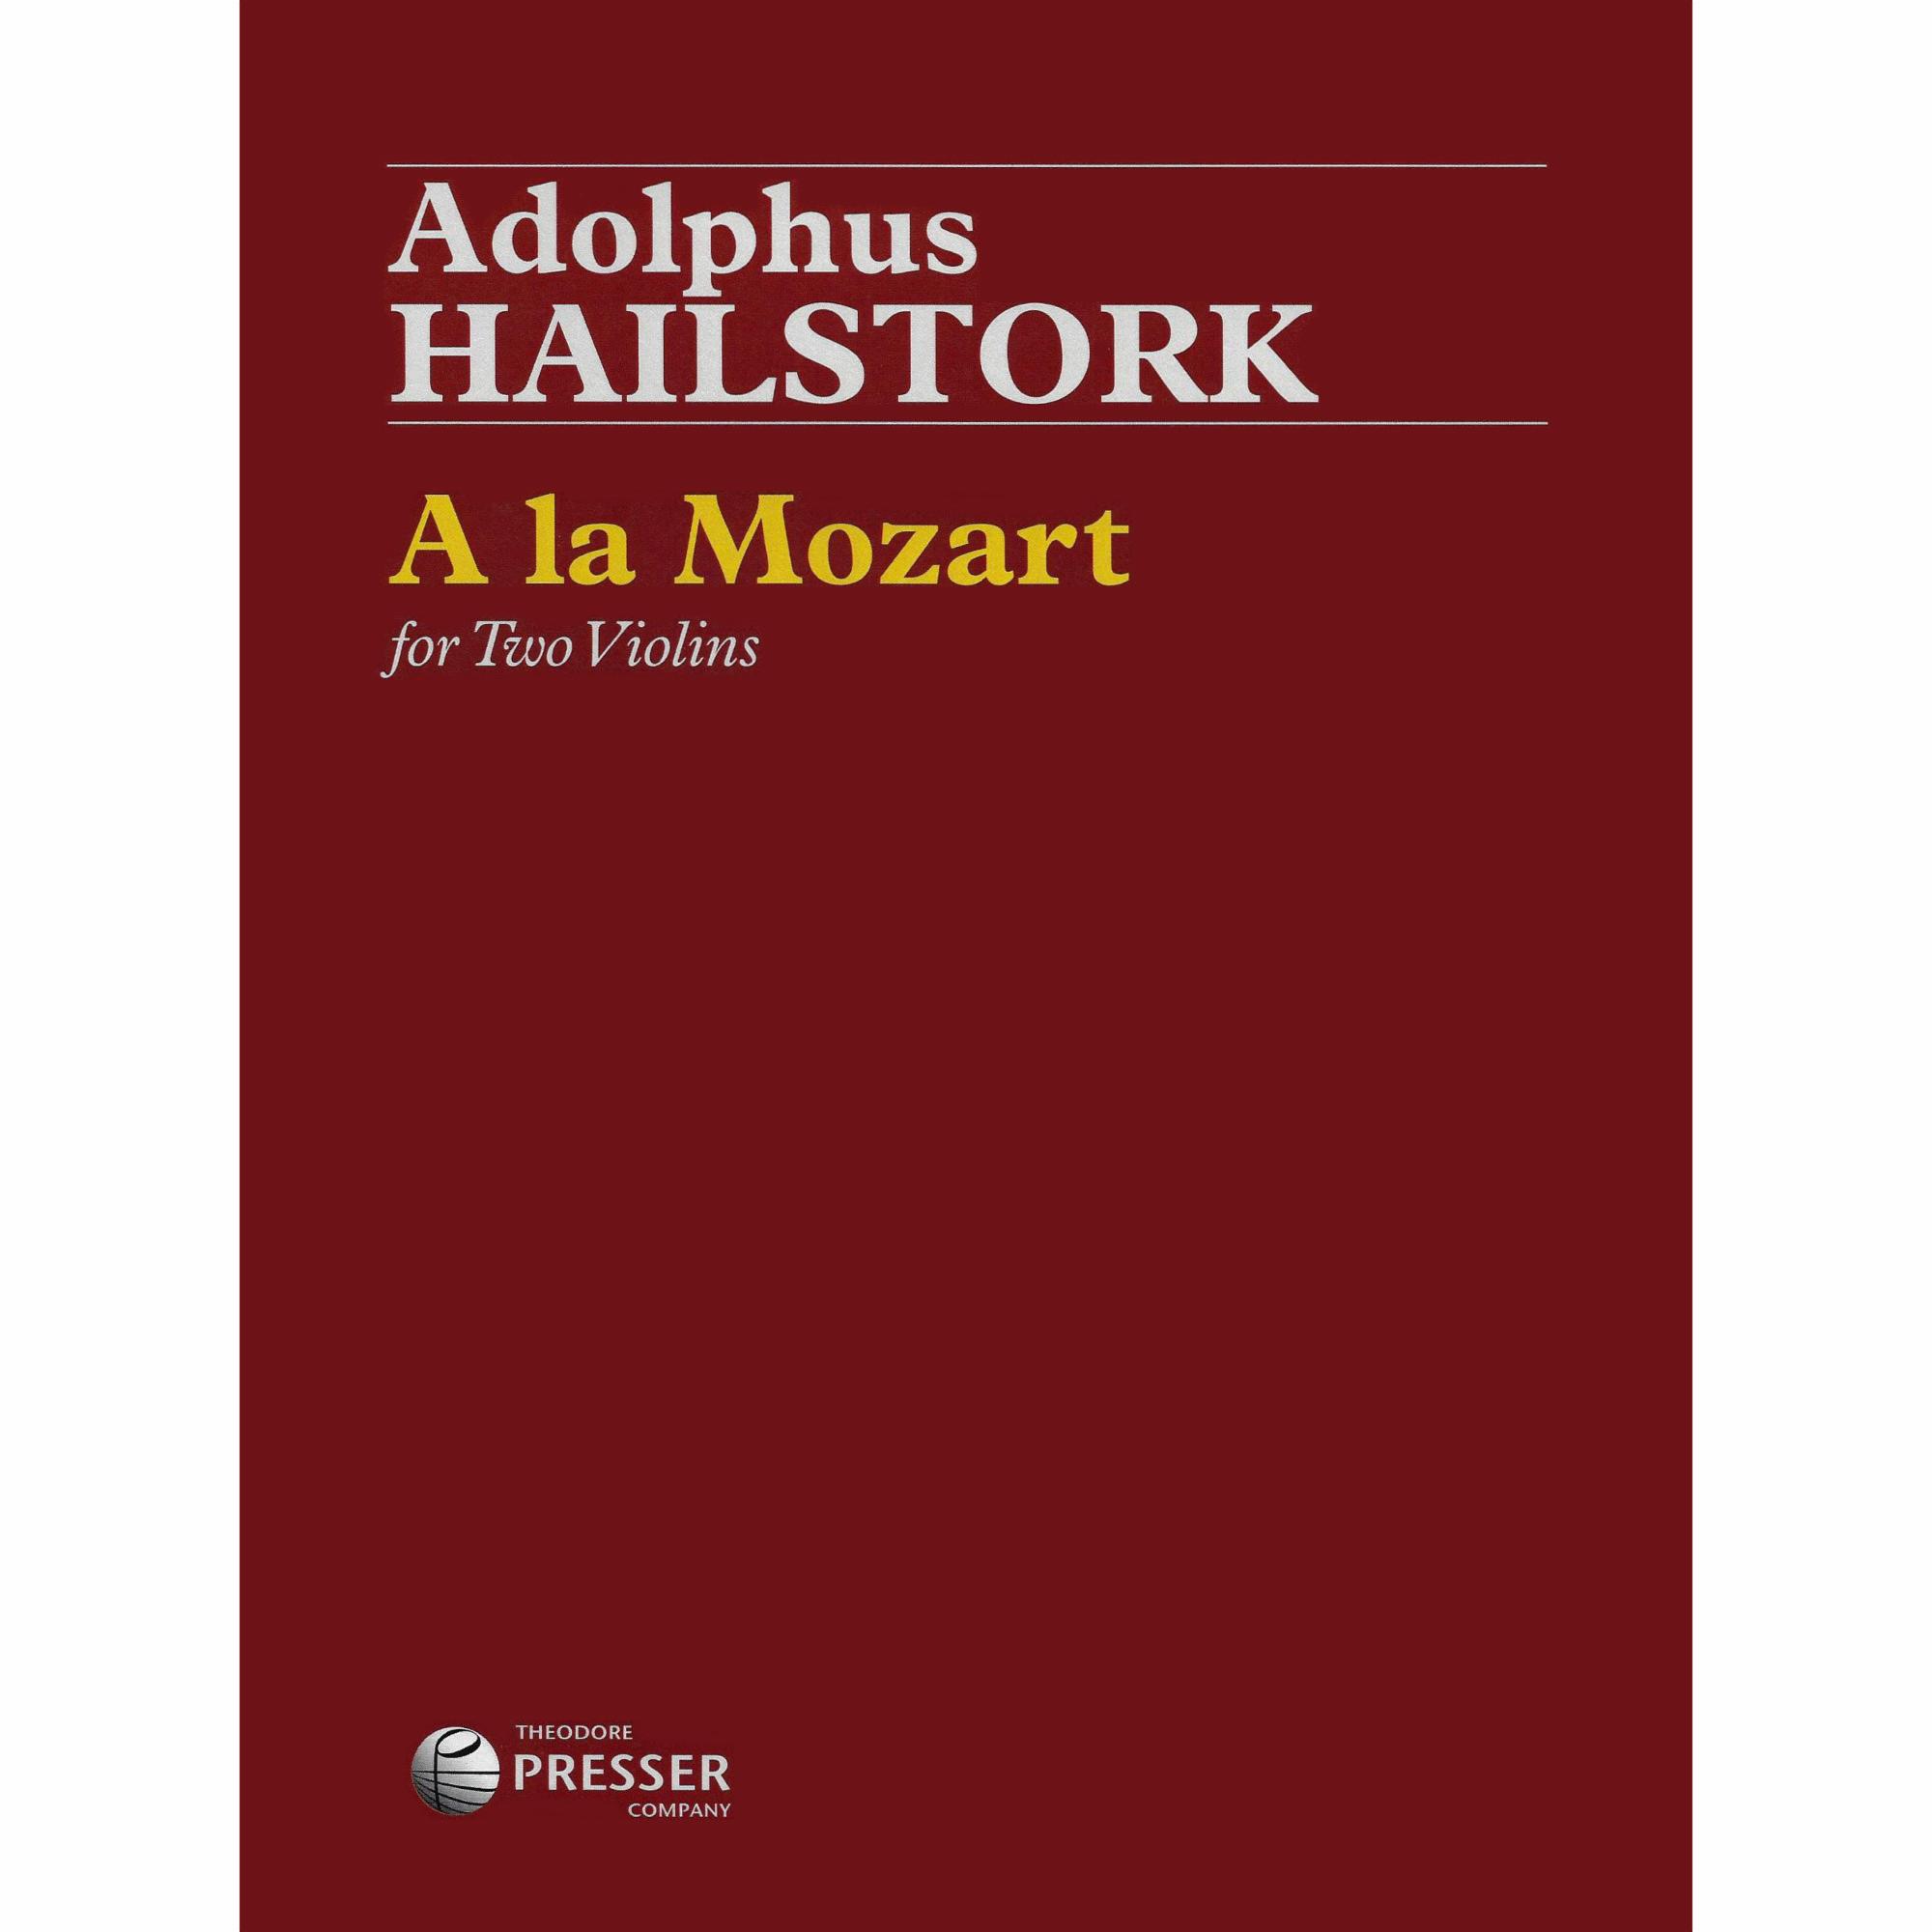 Hailstork -- A la Mozart for Two Violins